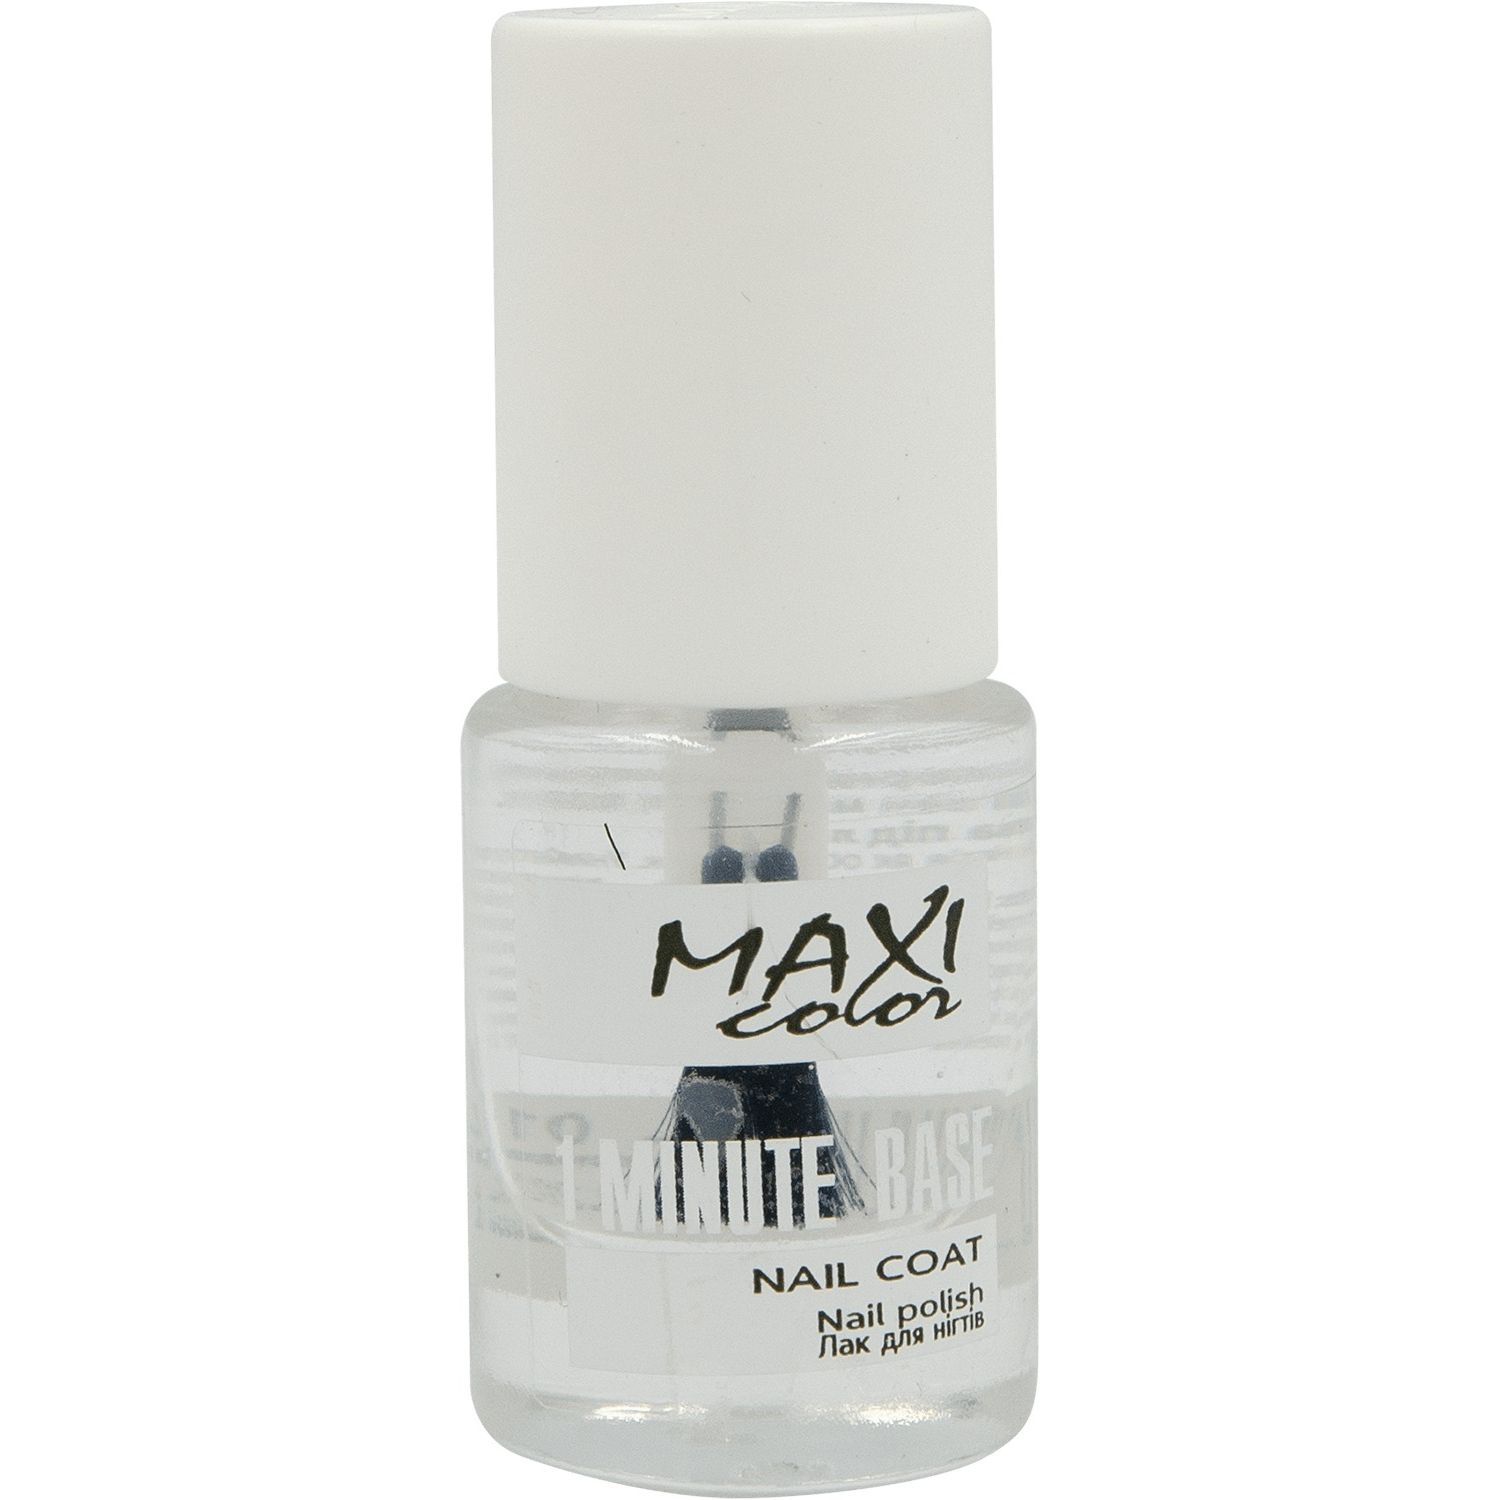 Основа для лака Maxi Color 1 Minute Base Nail Coat №001, 6 мл - фото 1